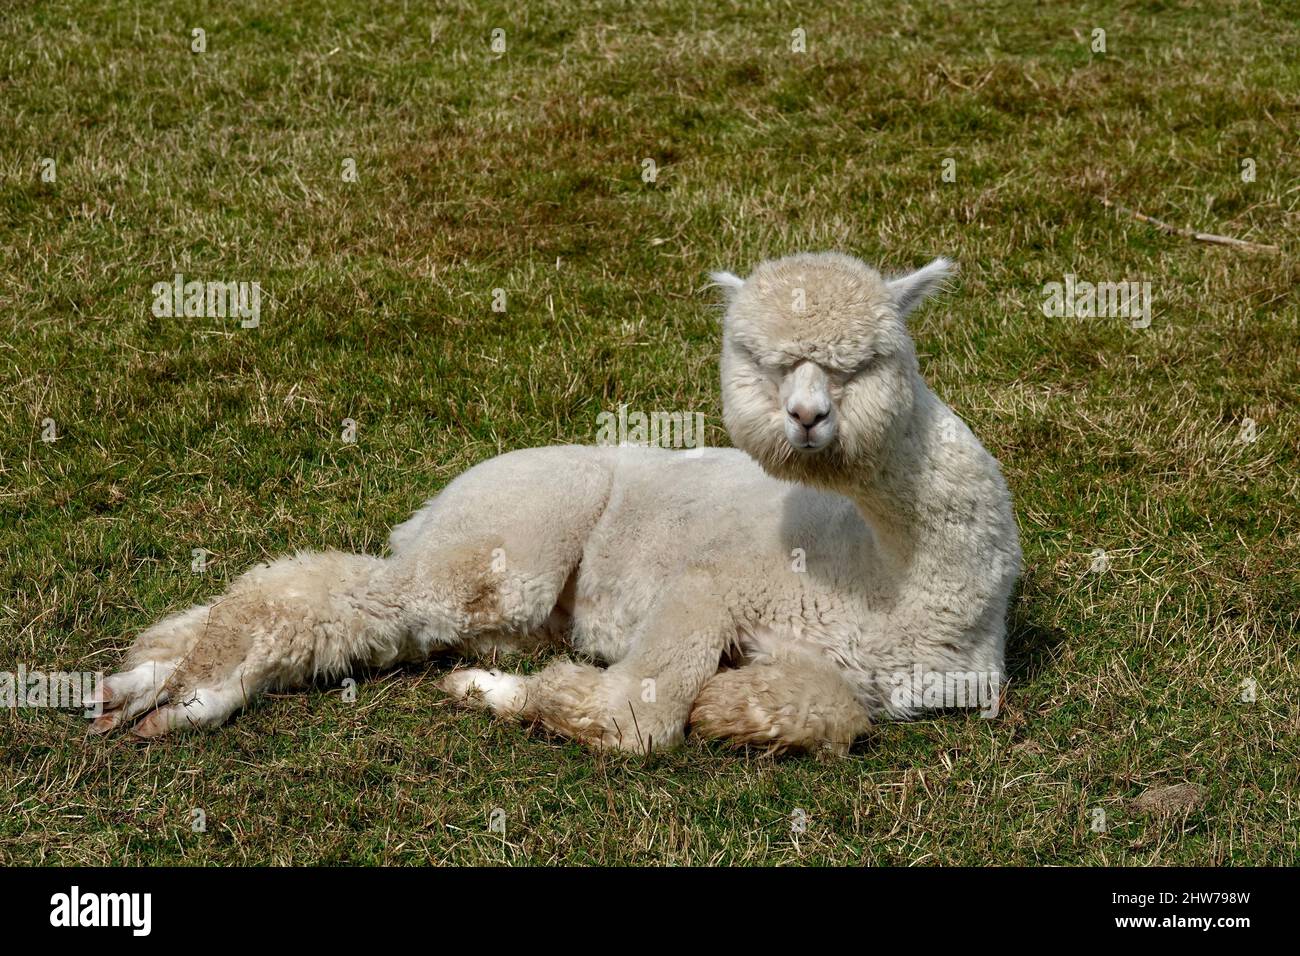 Niedliche Erwachsene Lama Alpaka liegen auf grünem Gras und starren auf die Kamera. Stockfoto